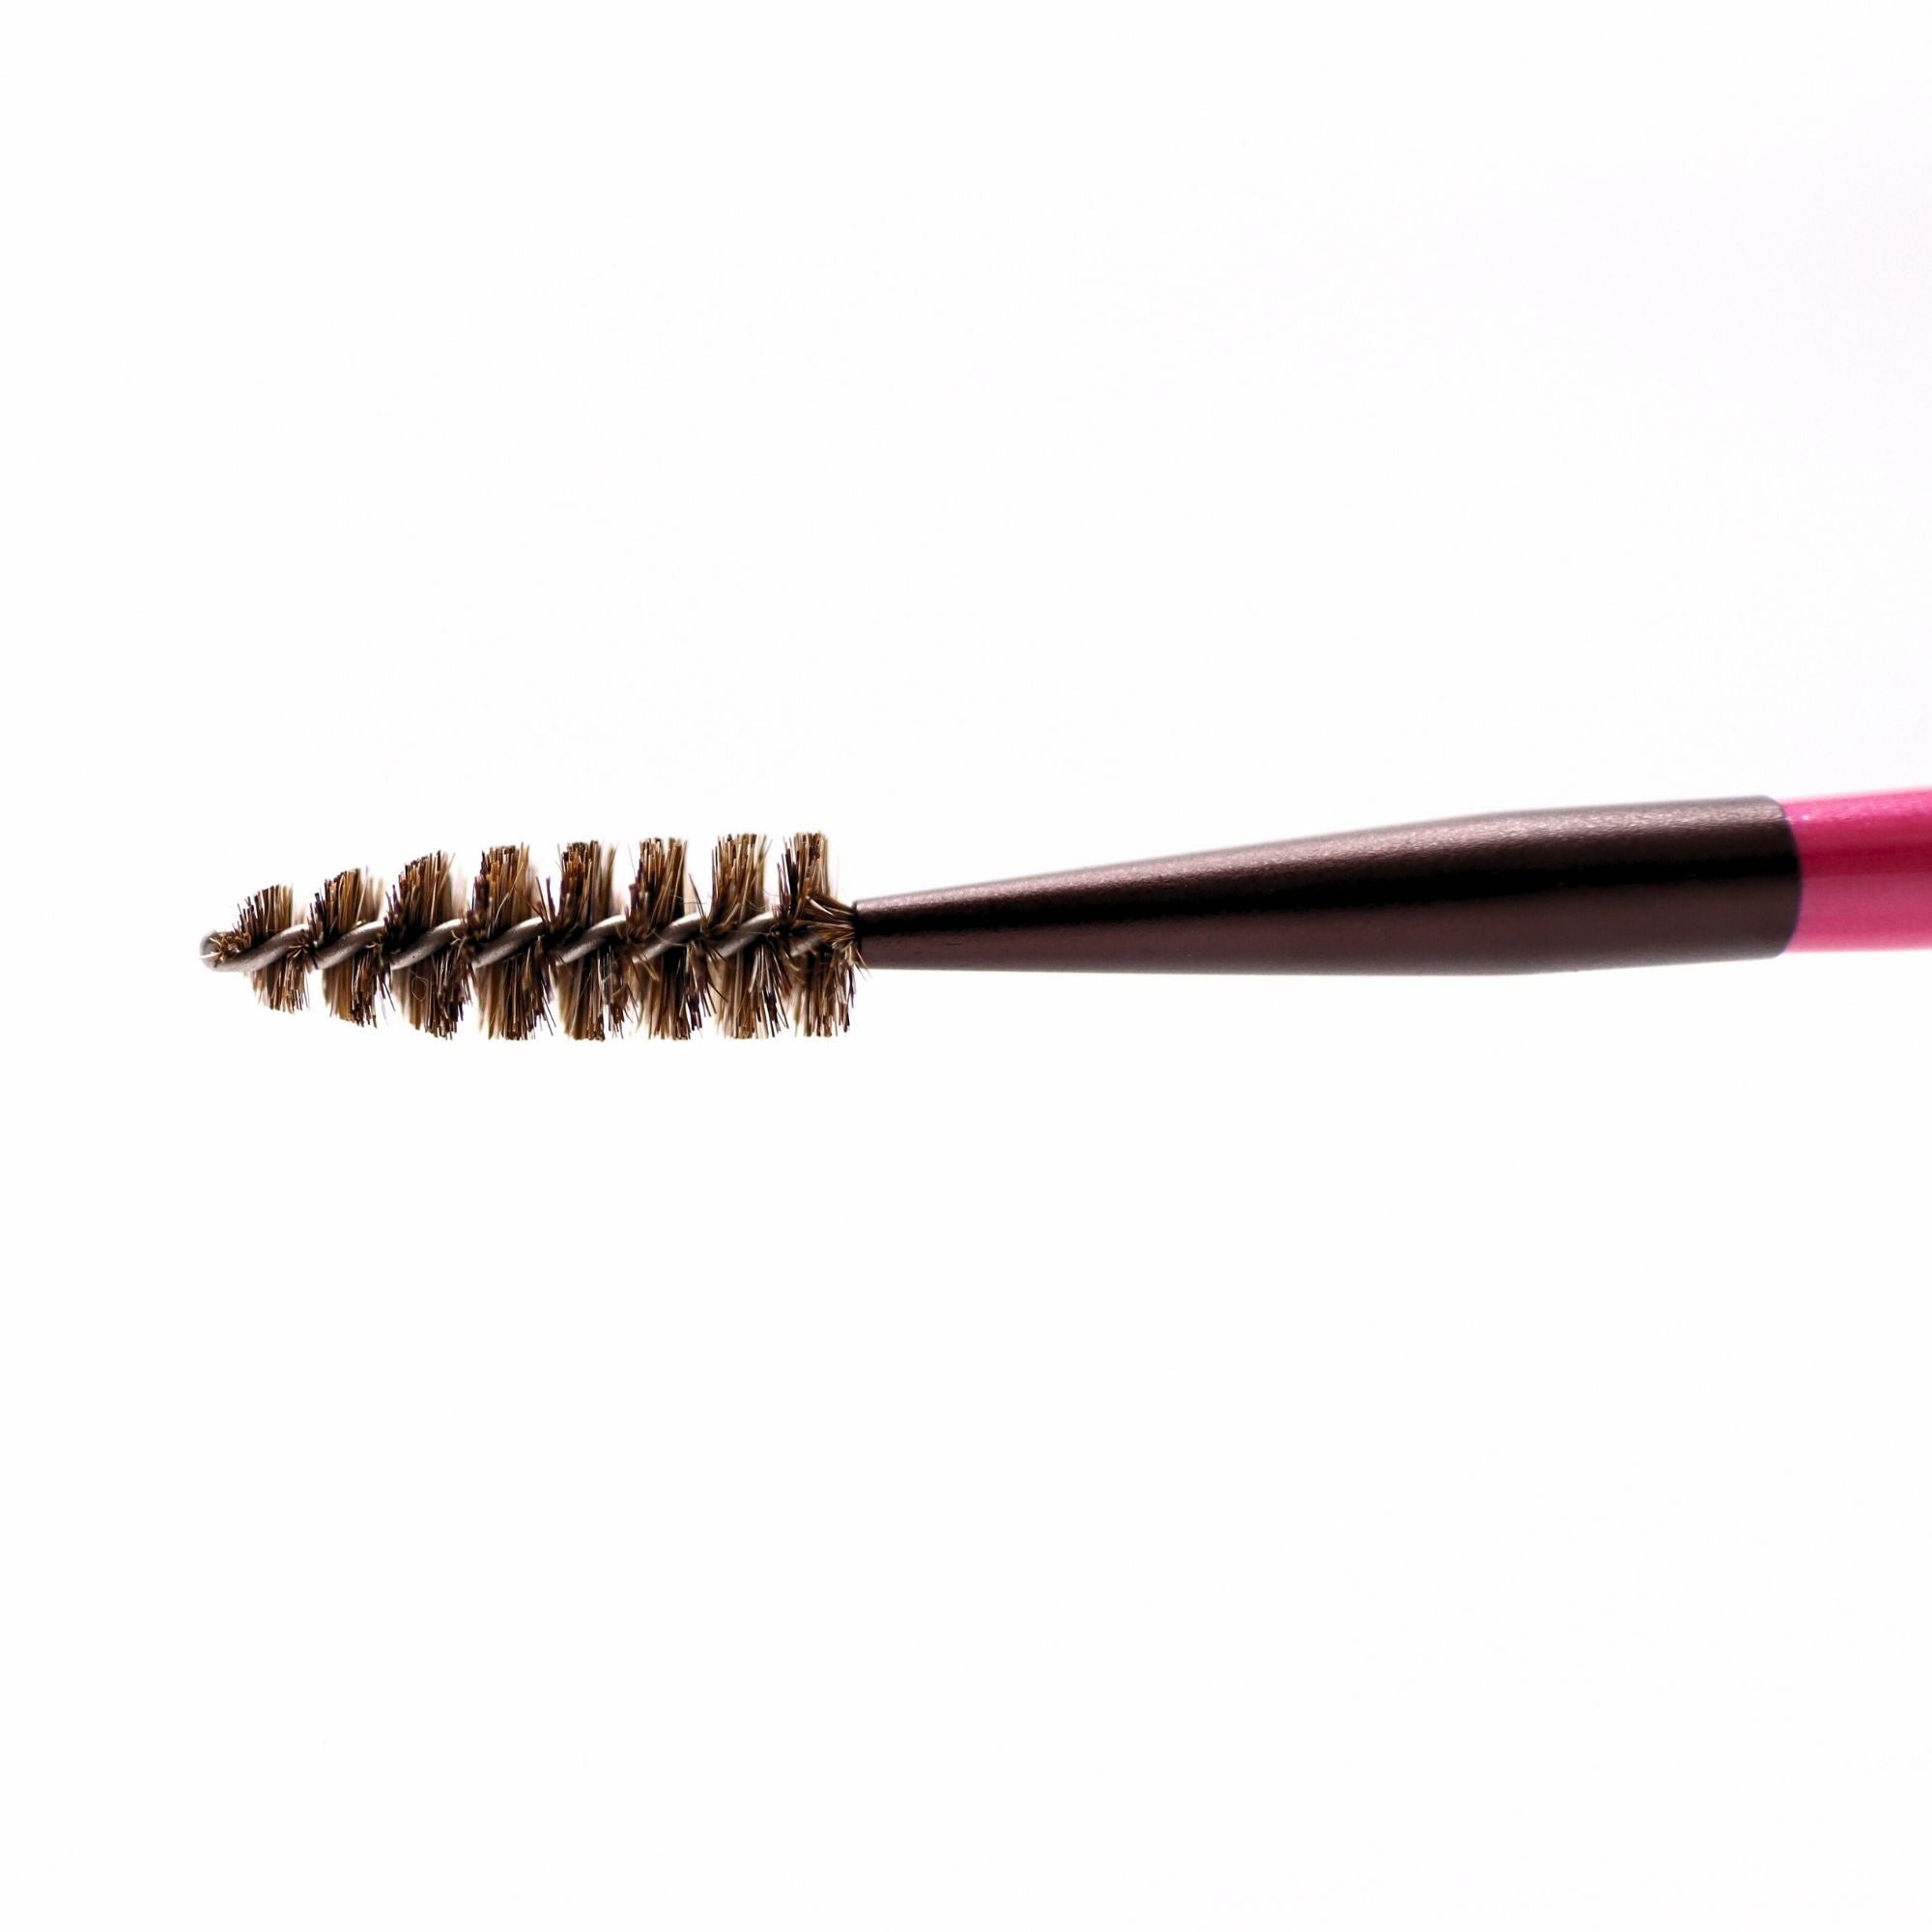 Tauhaus Screw Brush, Cherry Series (S-SC06P) - Fude Beauty, Japanese Makeup Brushes